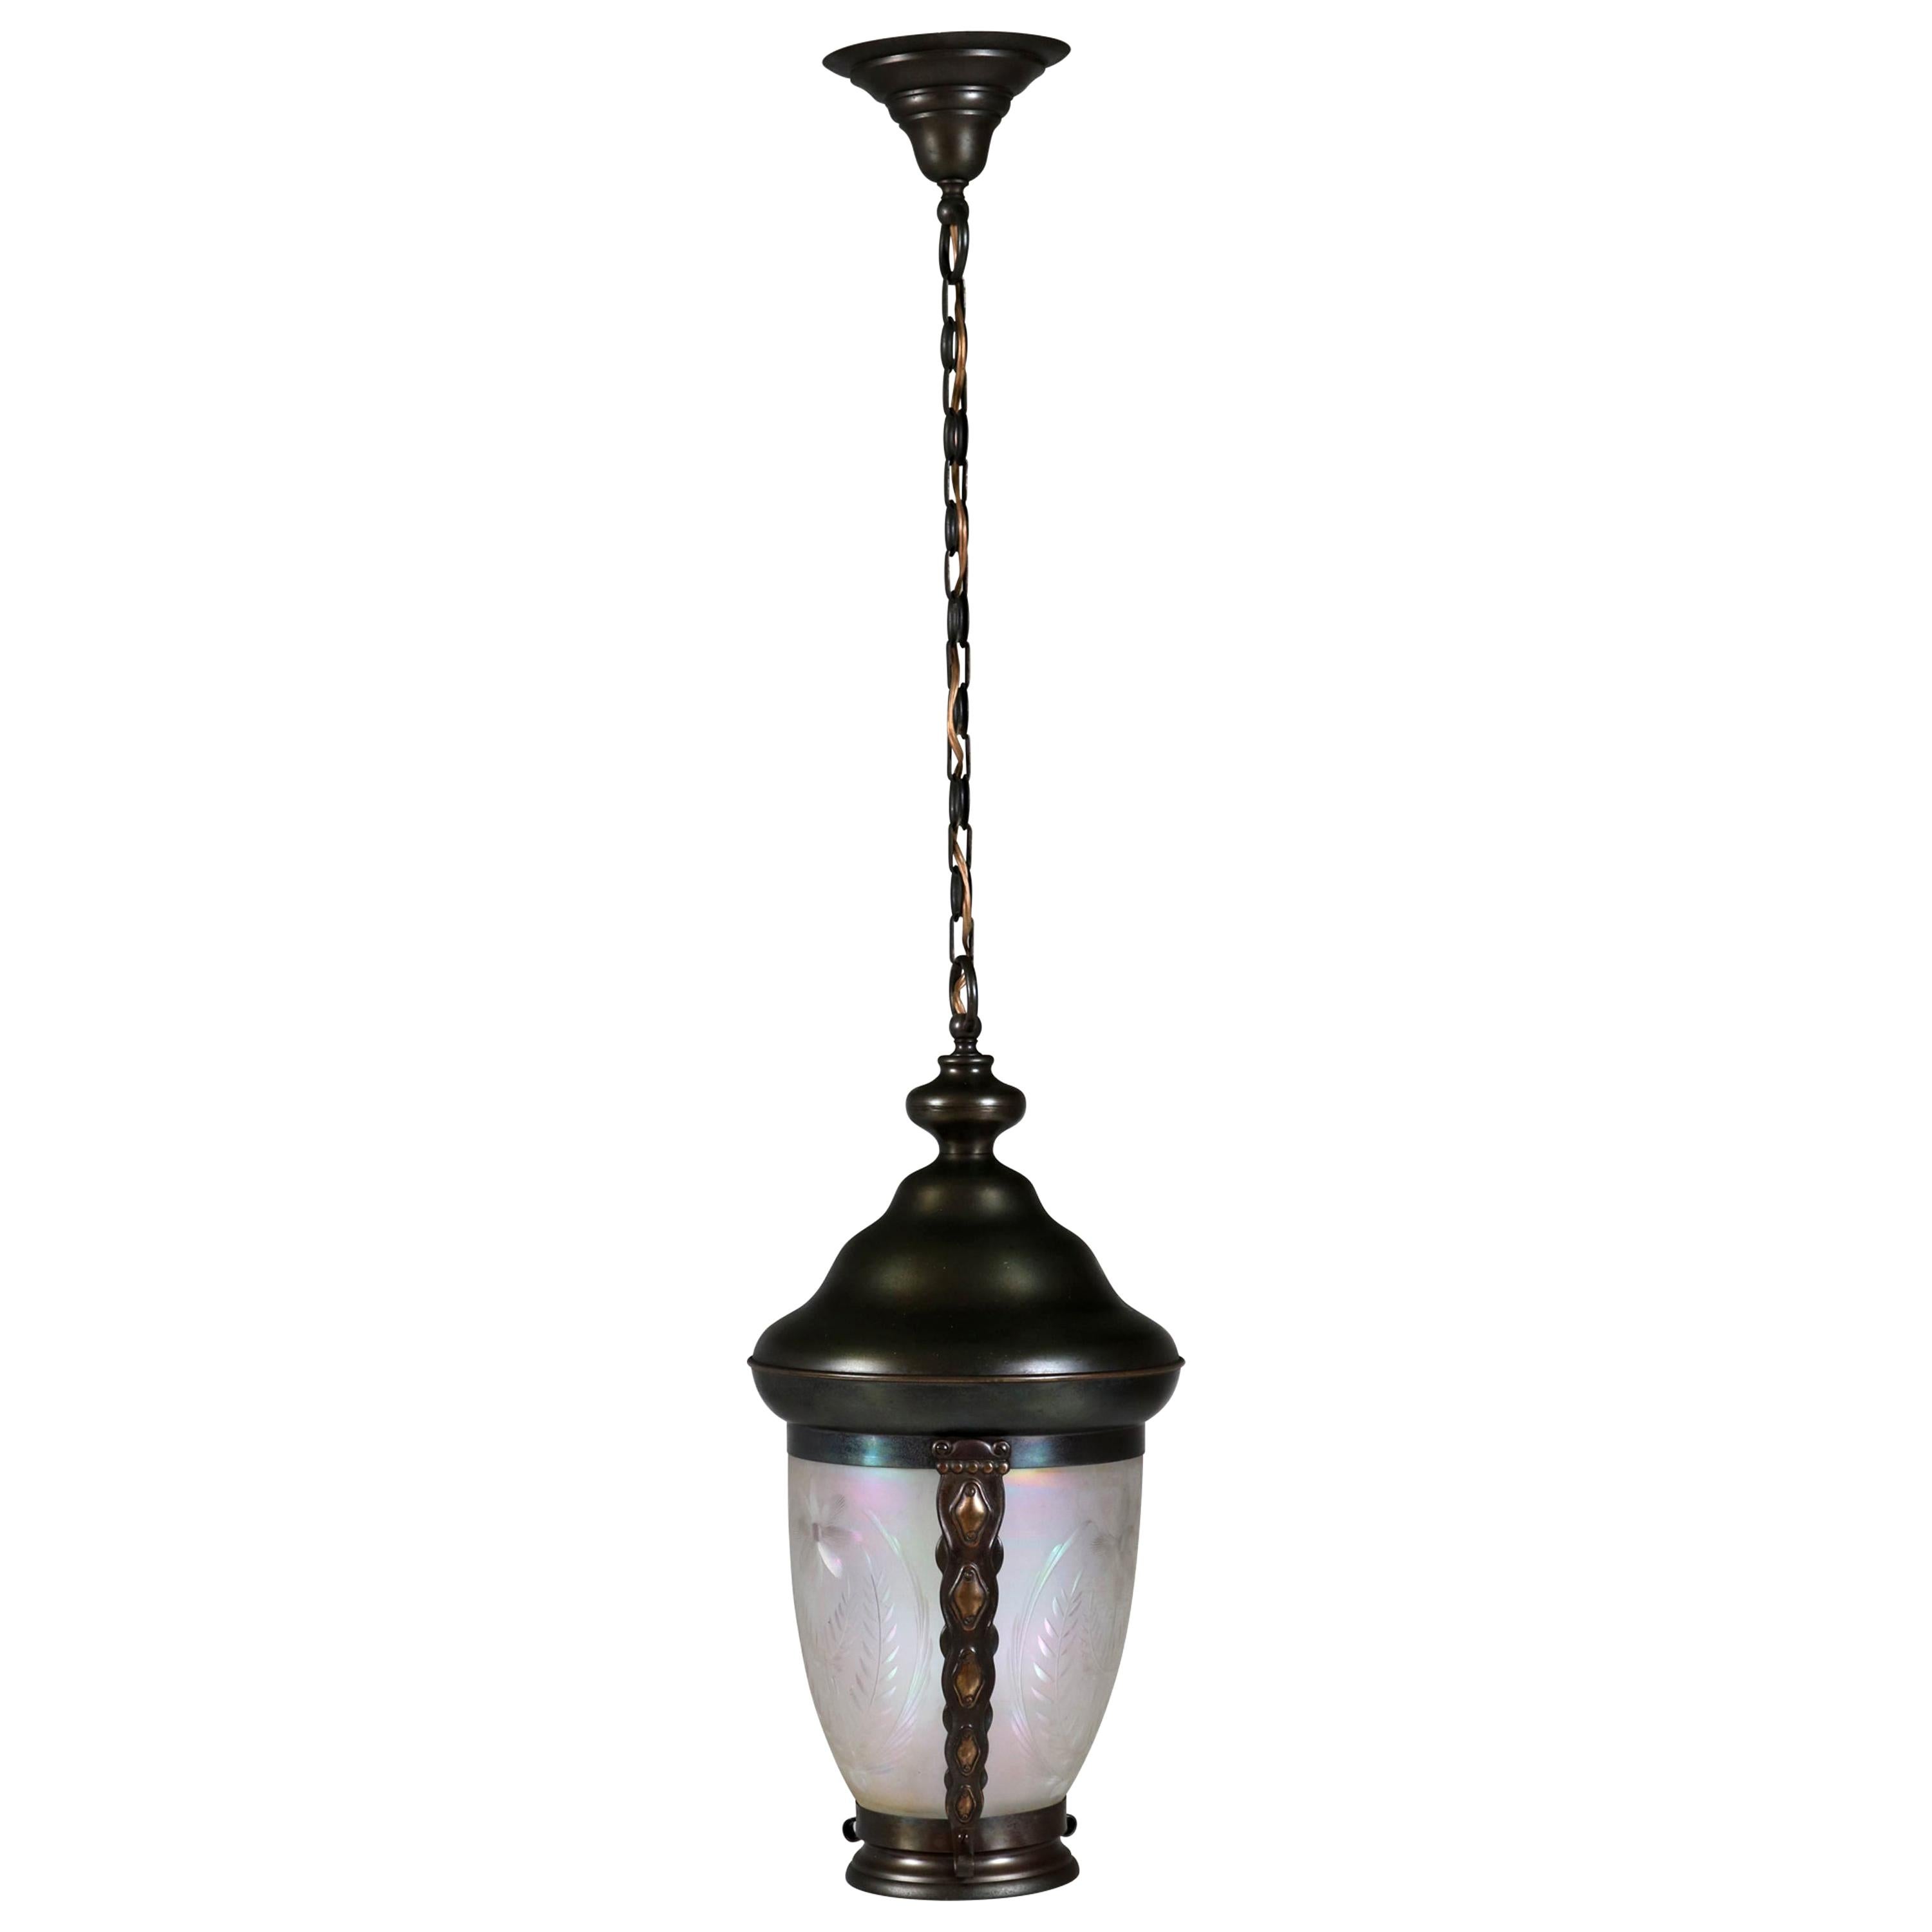 Lanterne ou lampe suspendue Art nouveau en laiton avec abat-jour en verre à l'essence:: années 1900